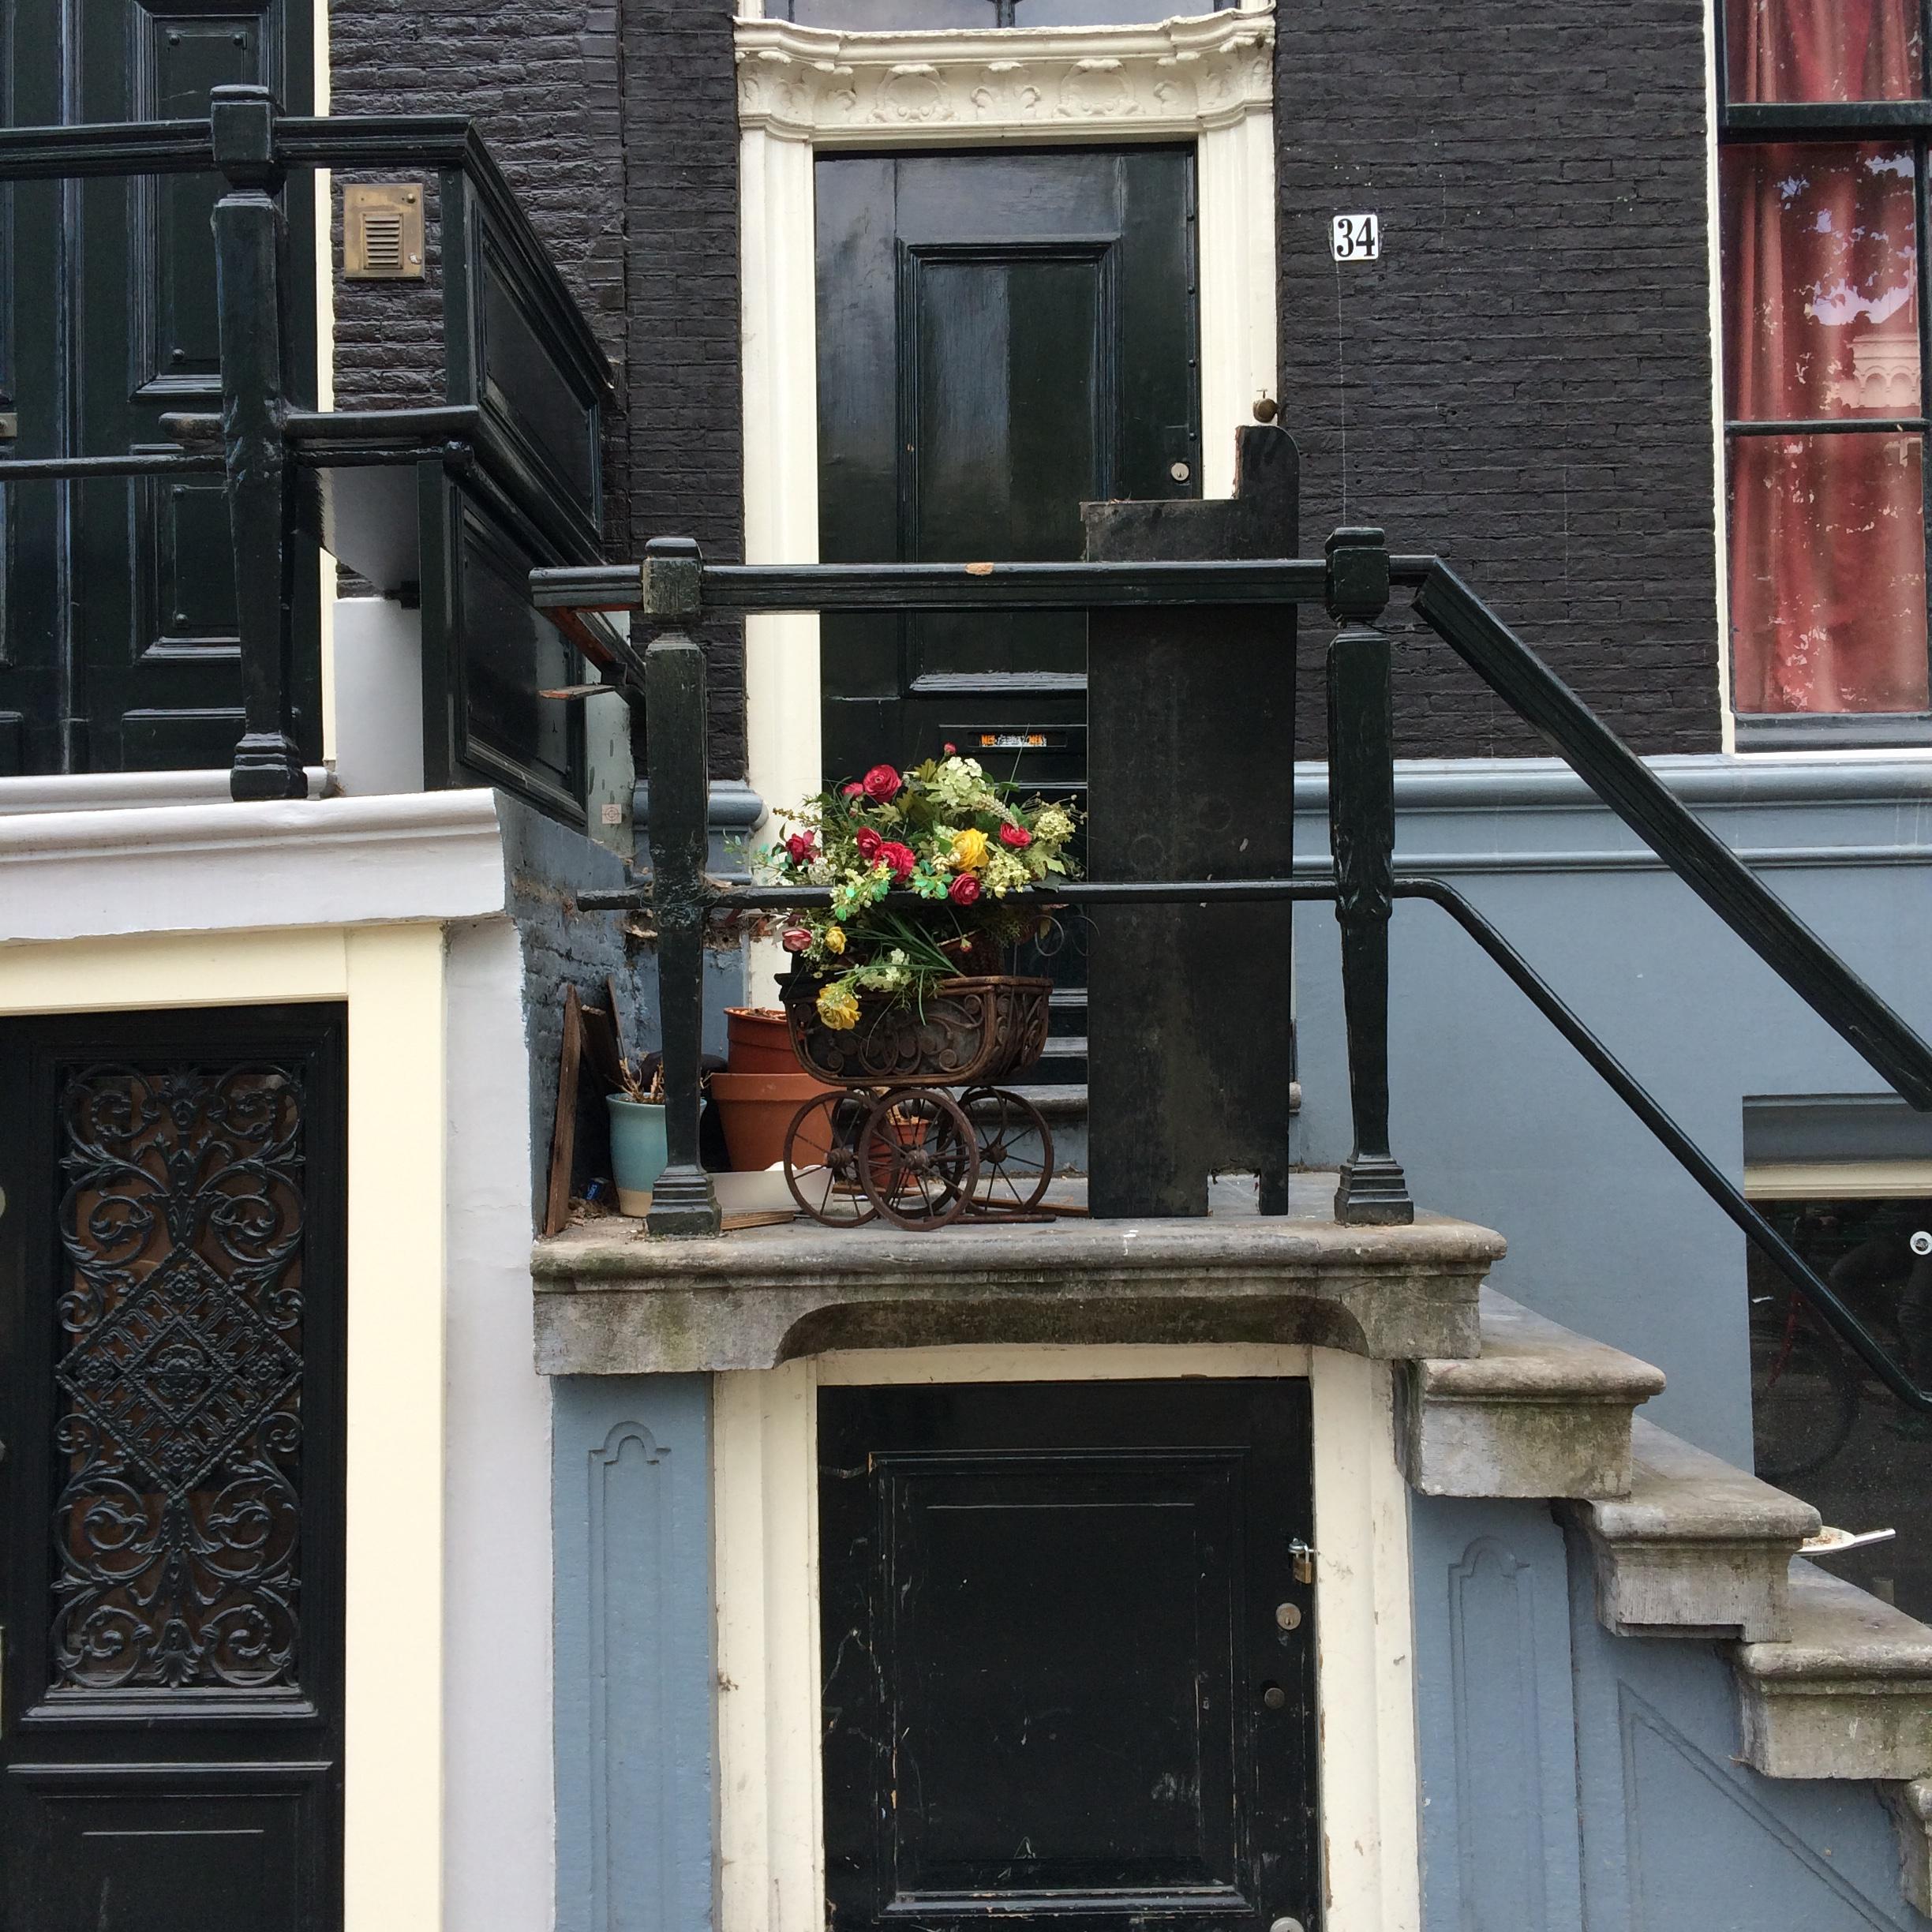 #treppendeko in Amsterdam! #haustür #eingangstür #blauewand #travel